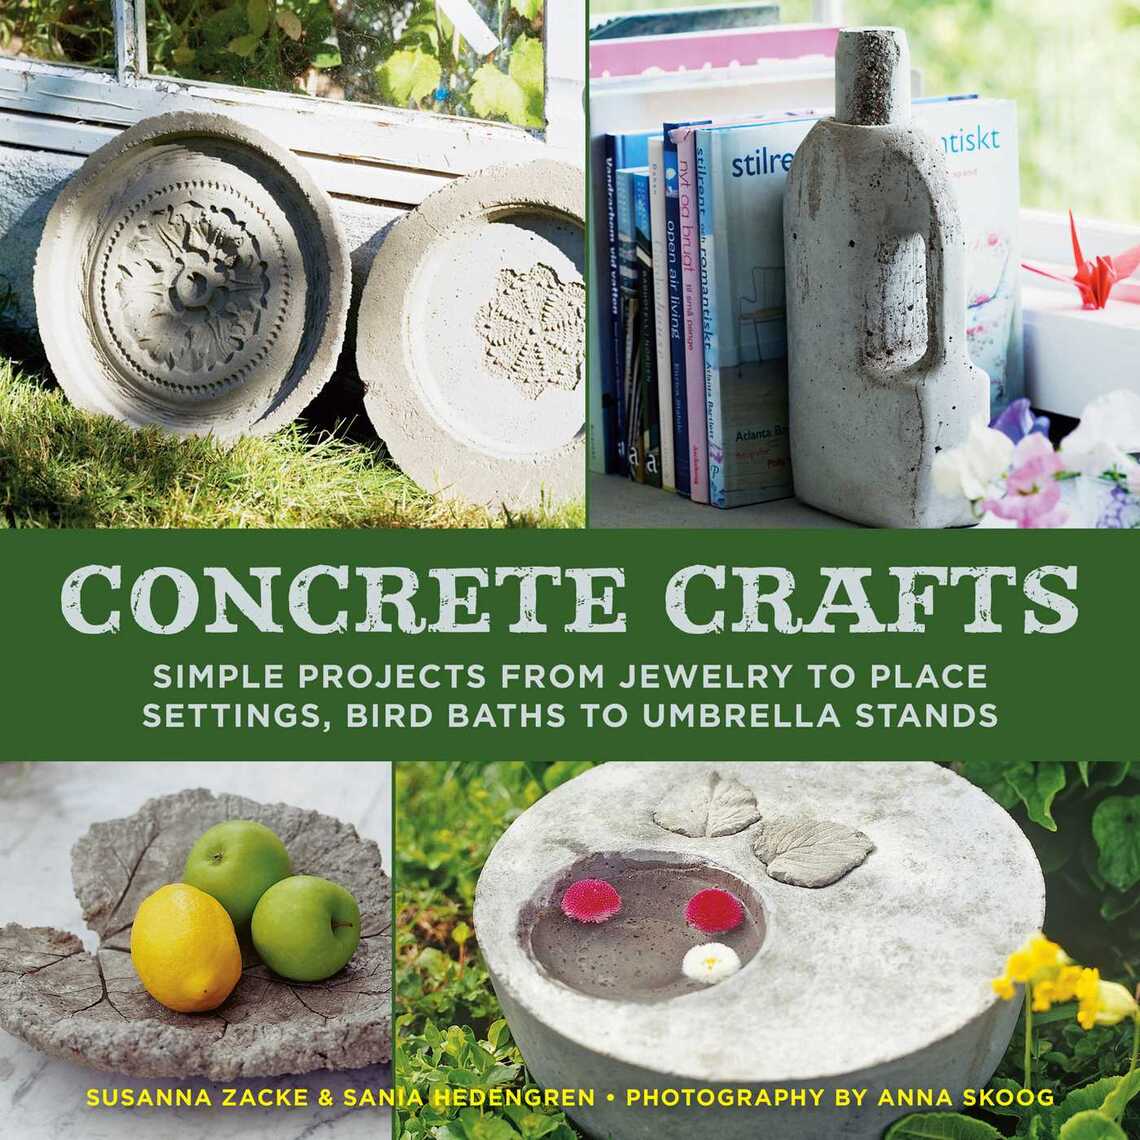 Concrete Crafts by Susanna Zacke, Sania Hedengren, and Anna Skoog